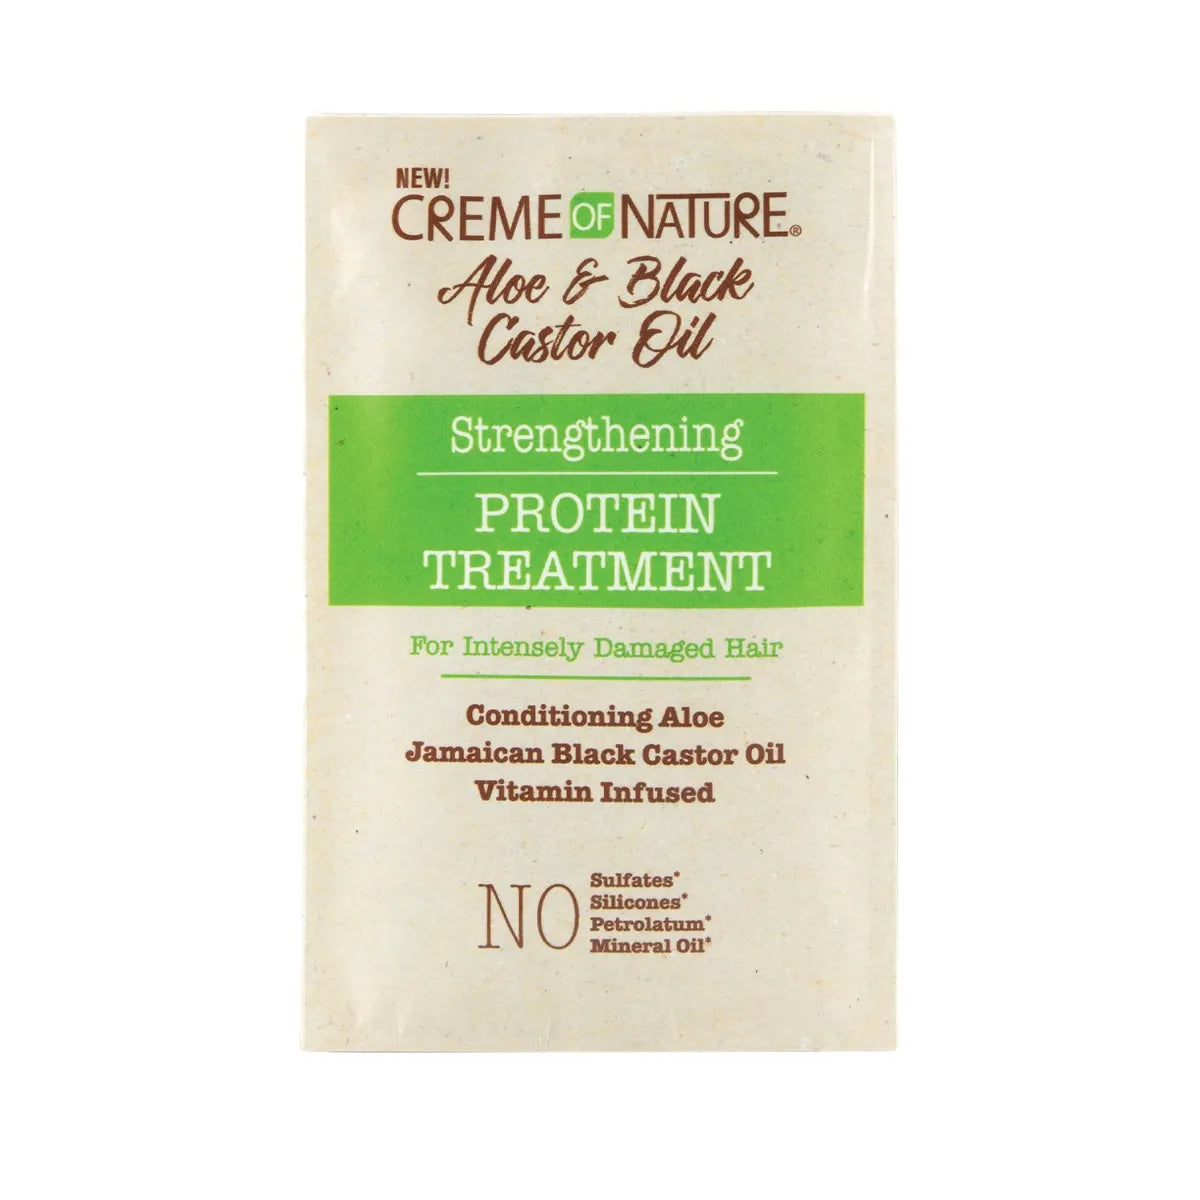 Cream of Nature Aloe&Black Castor Oil Strengthening Protein Treatment 1.5oz